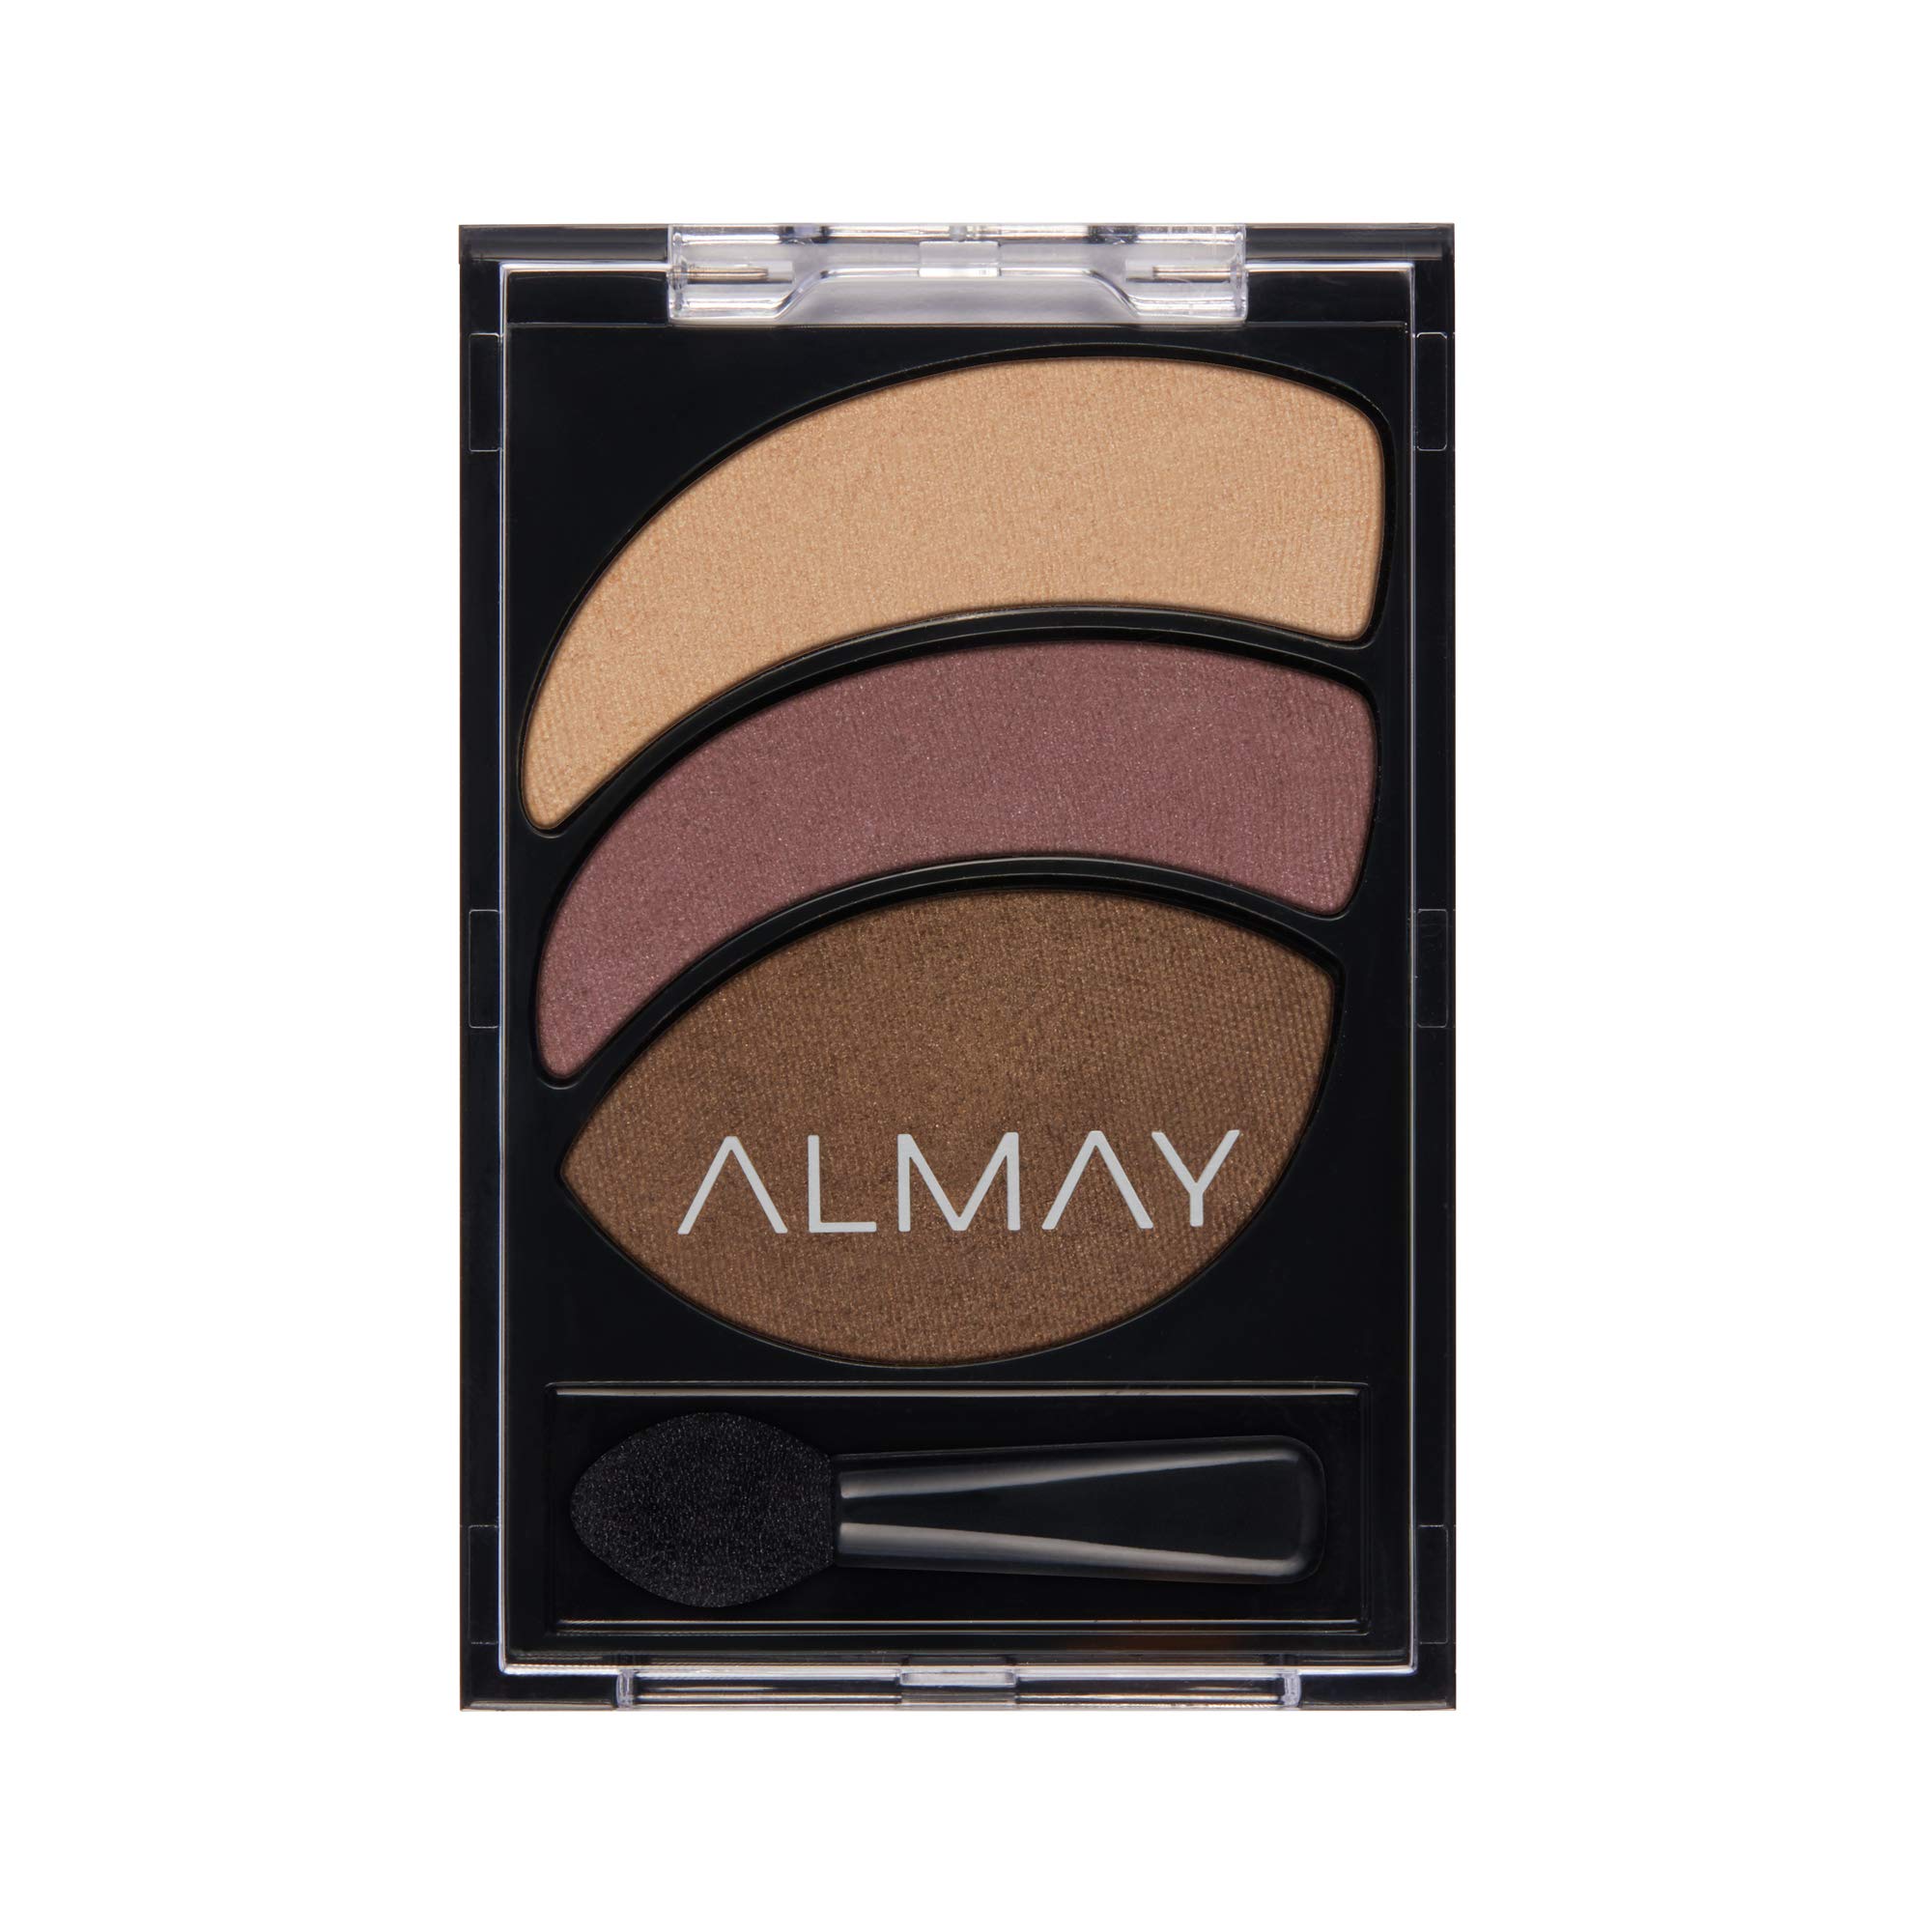 Almay Eyeshadow Palette, Longlasting Eye Makeup, Smoky Eye Trio, Hypoallergenic, 020 Smoldering Embers, 0.08 Oz